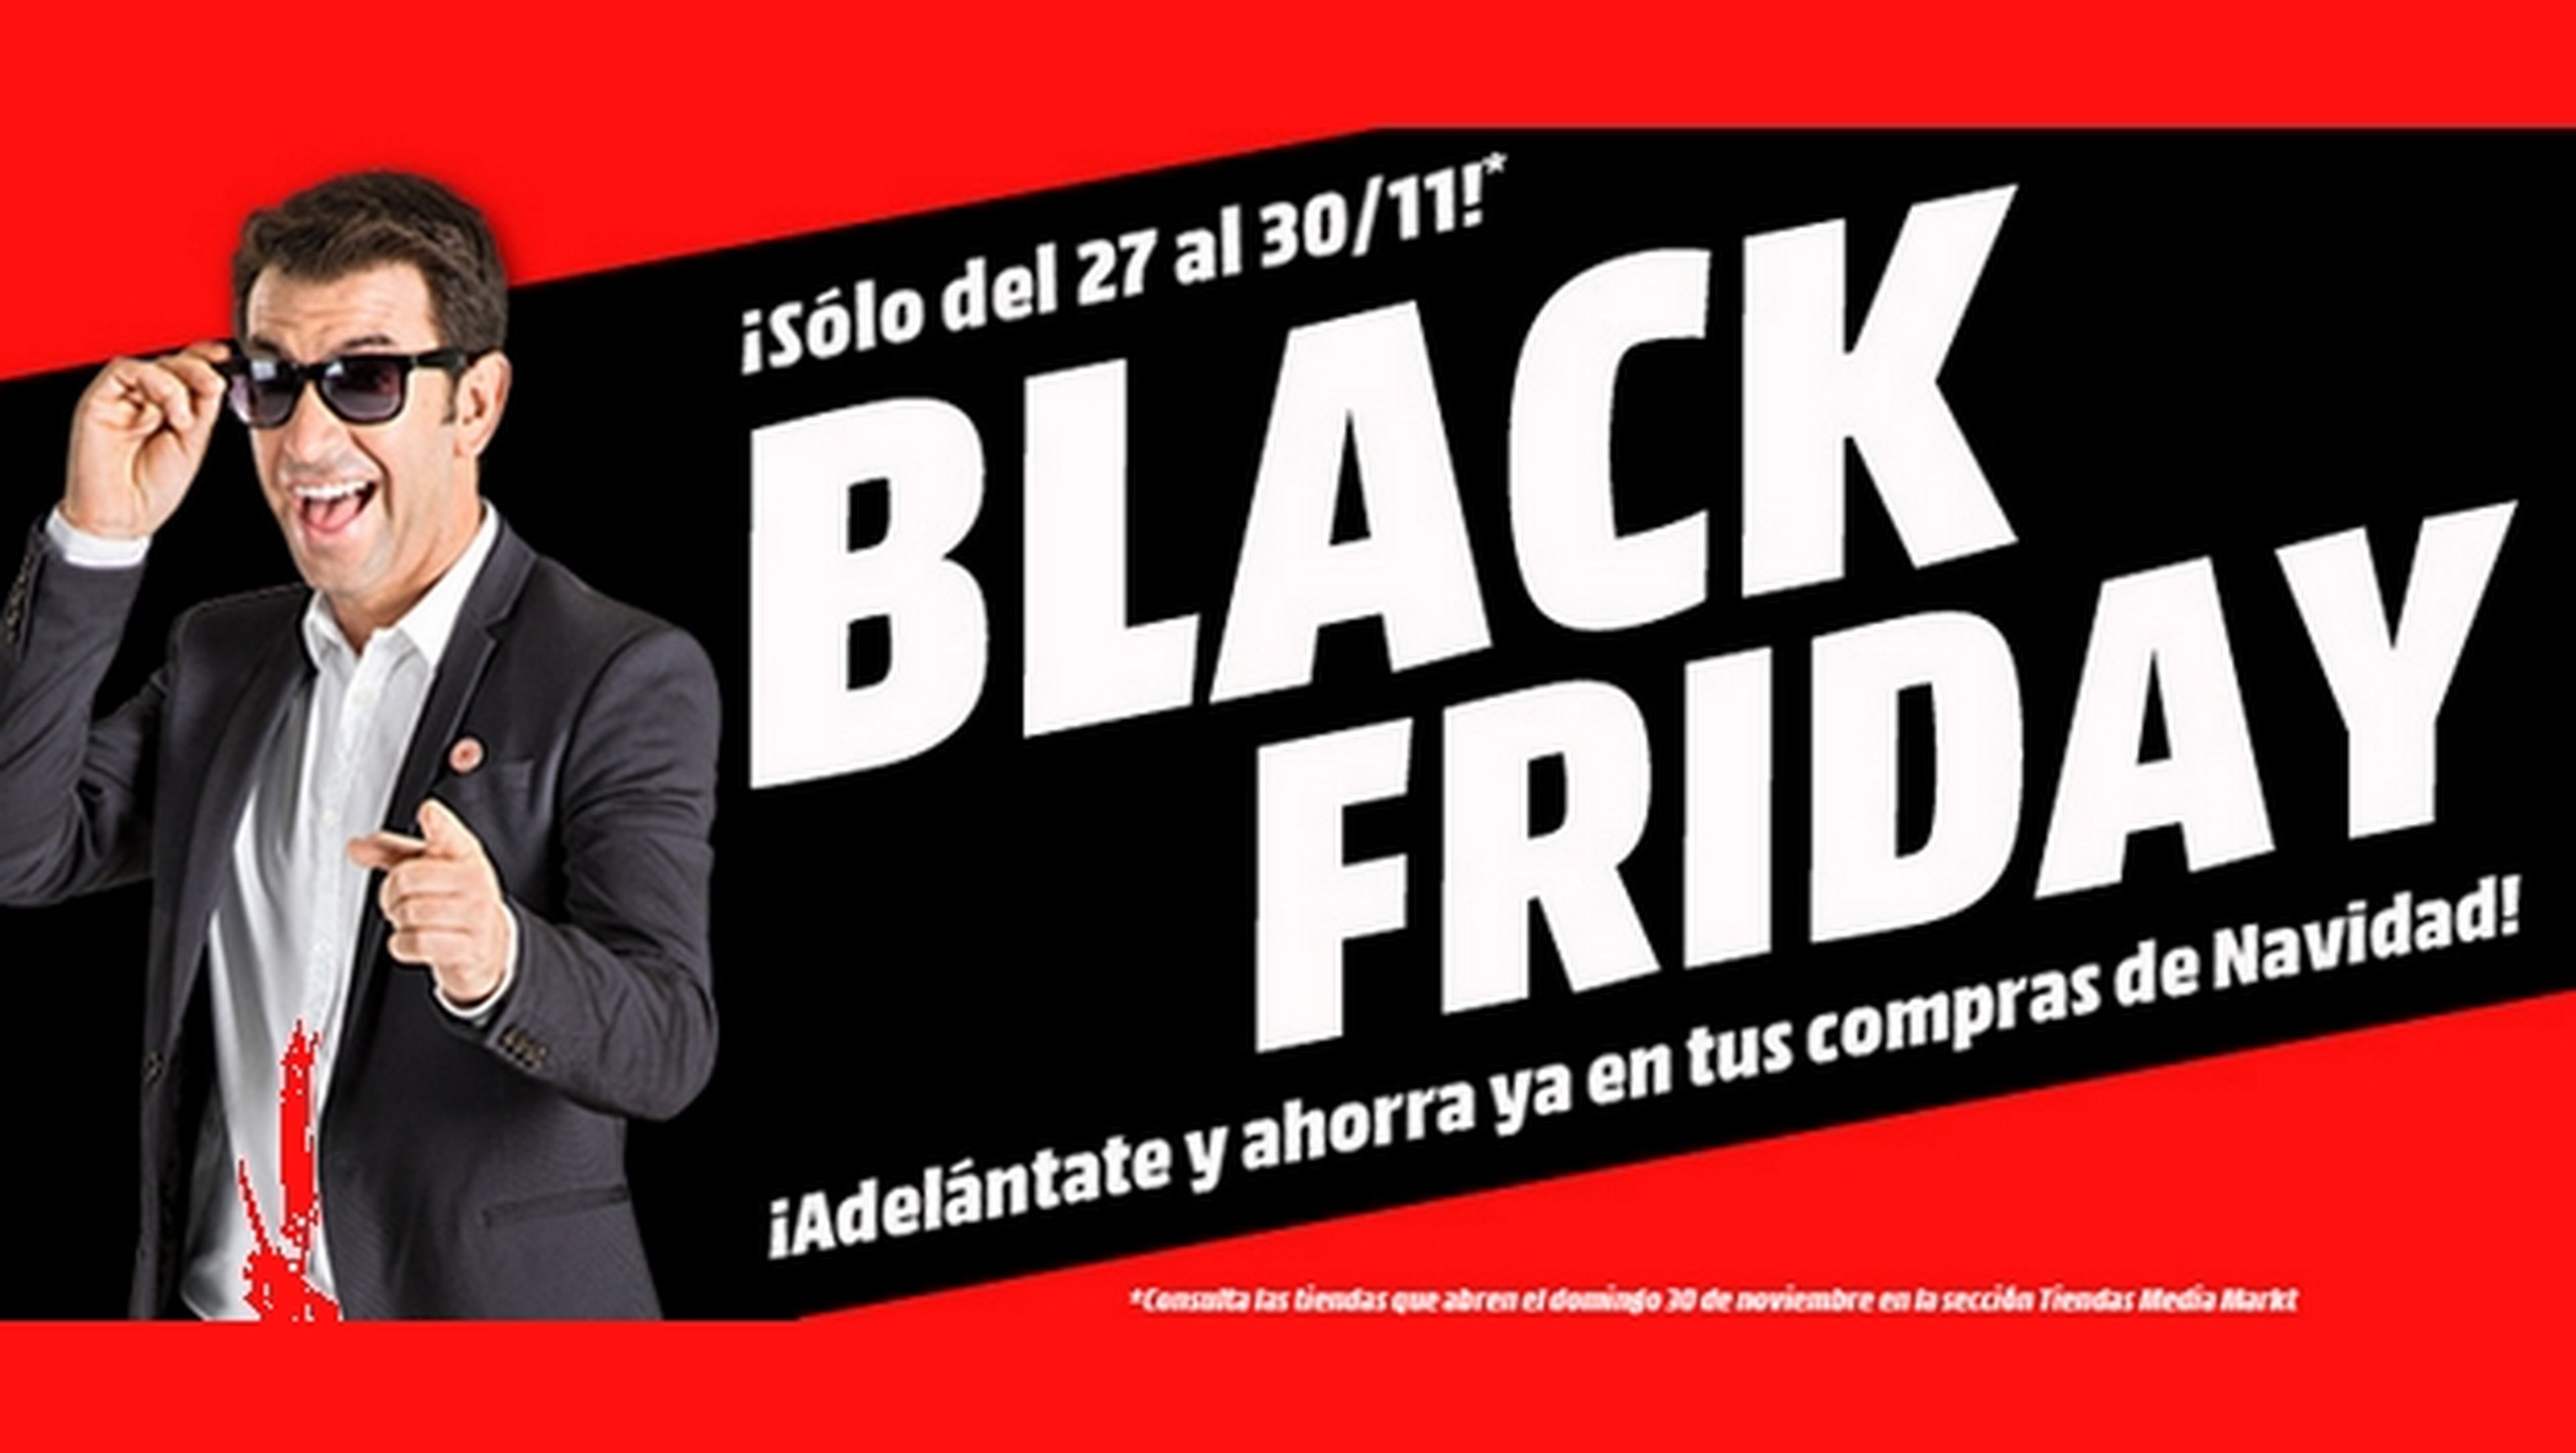 Black Friday Media Markt 2014: las mejores ofertas.